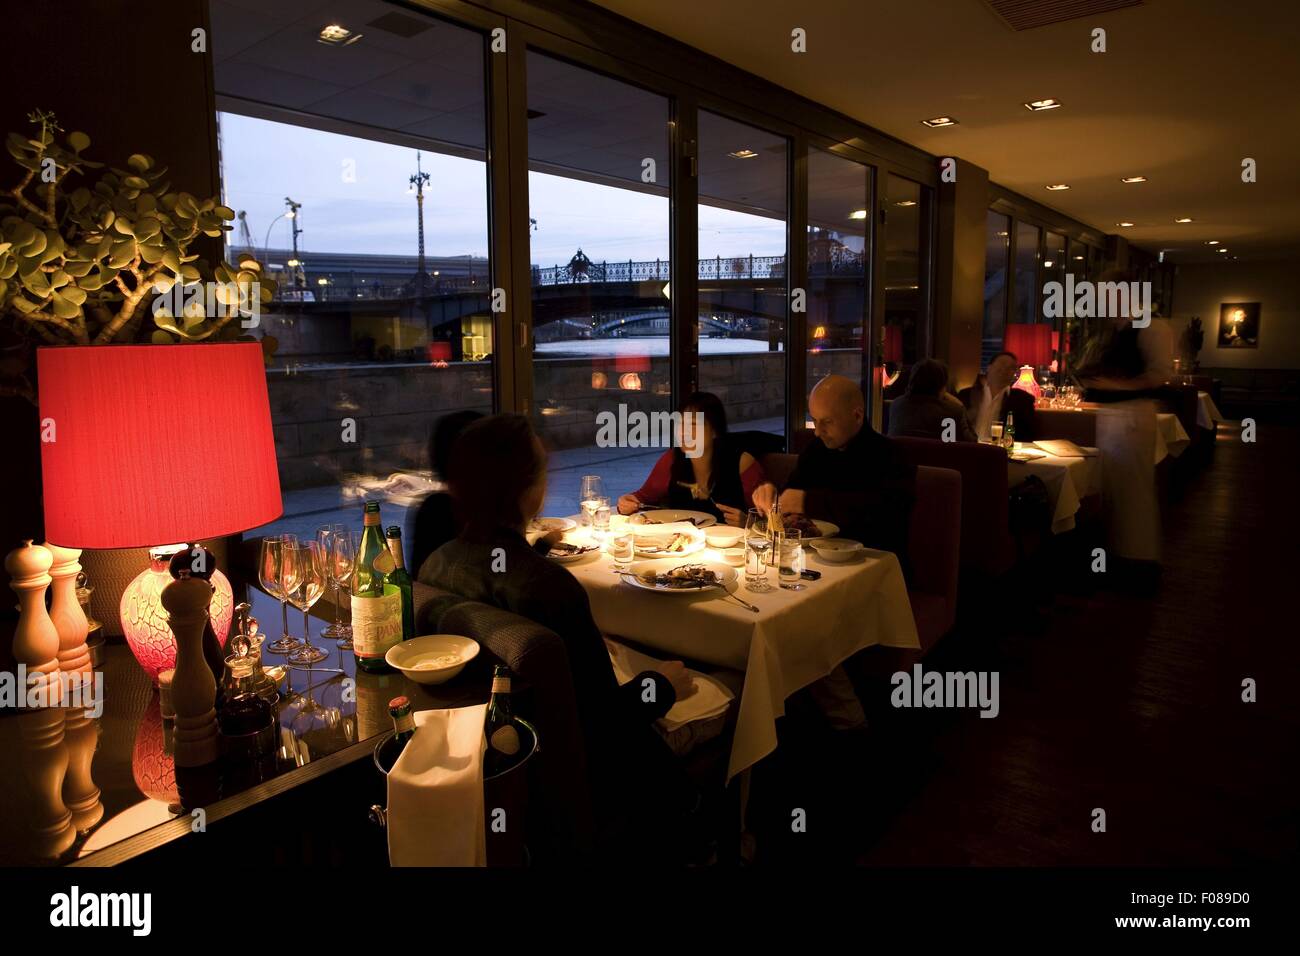 Menschen Essen im Grill Royal Restaurant, Berlin, Deutschland  Stockfotografie - Alamy